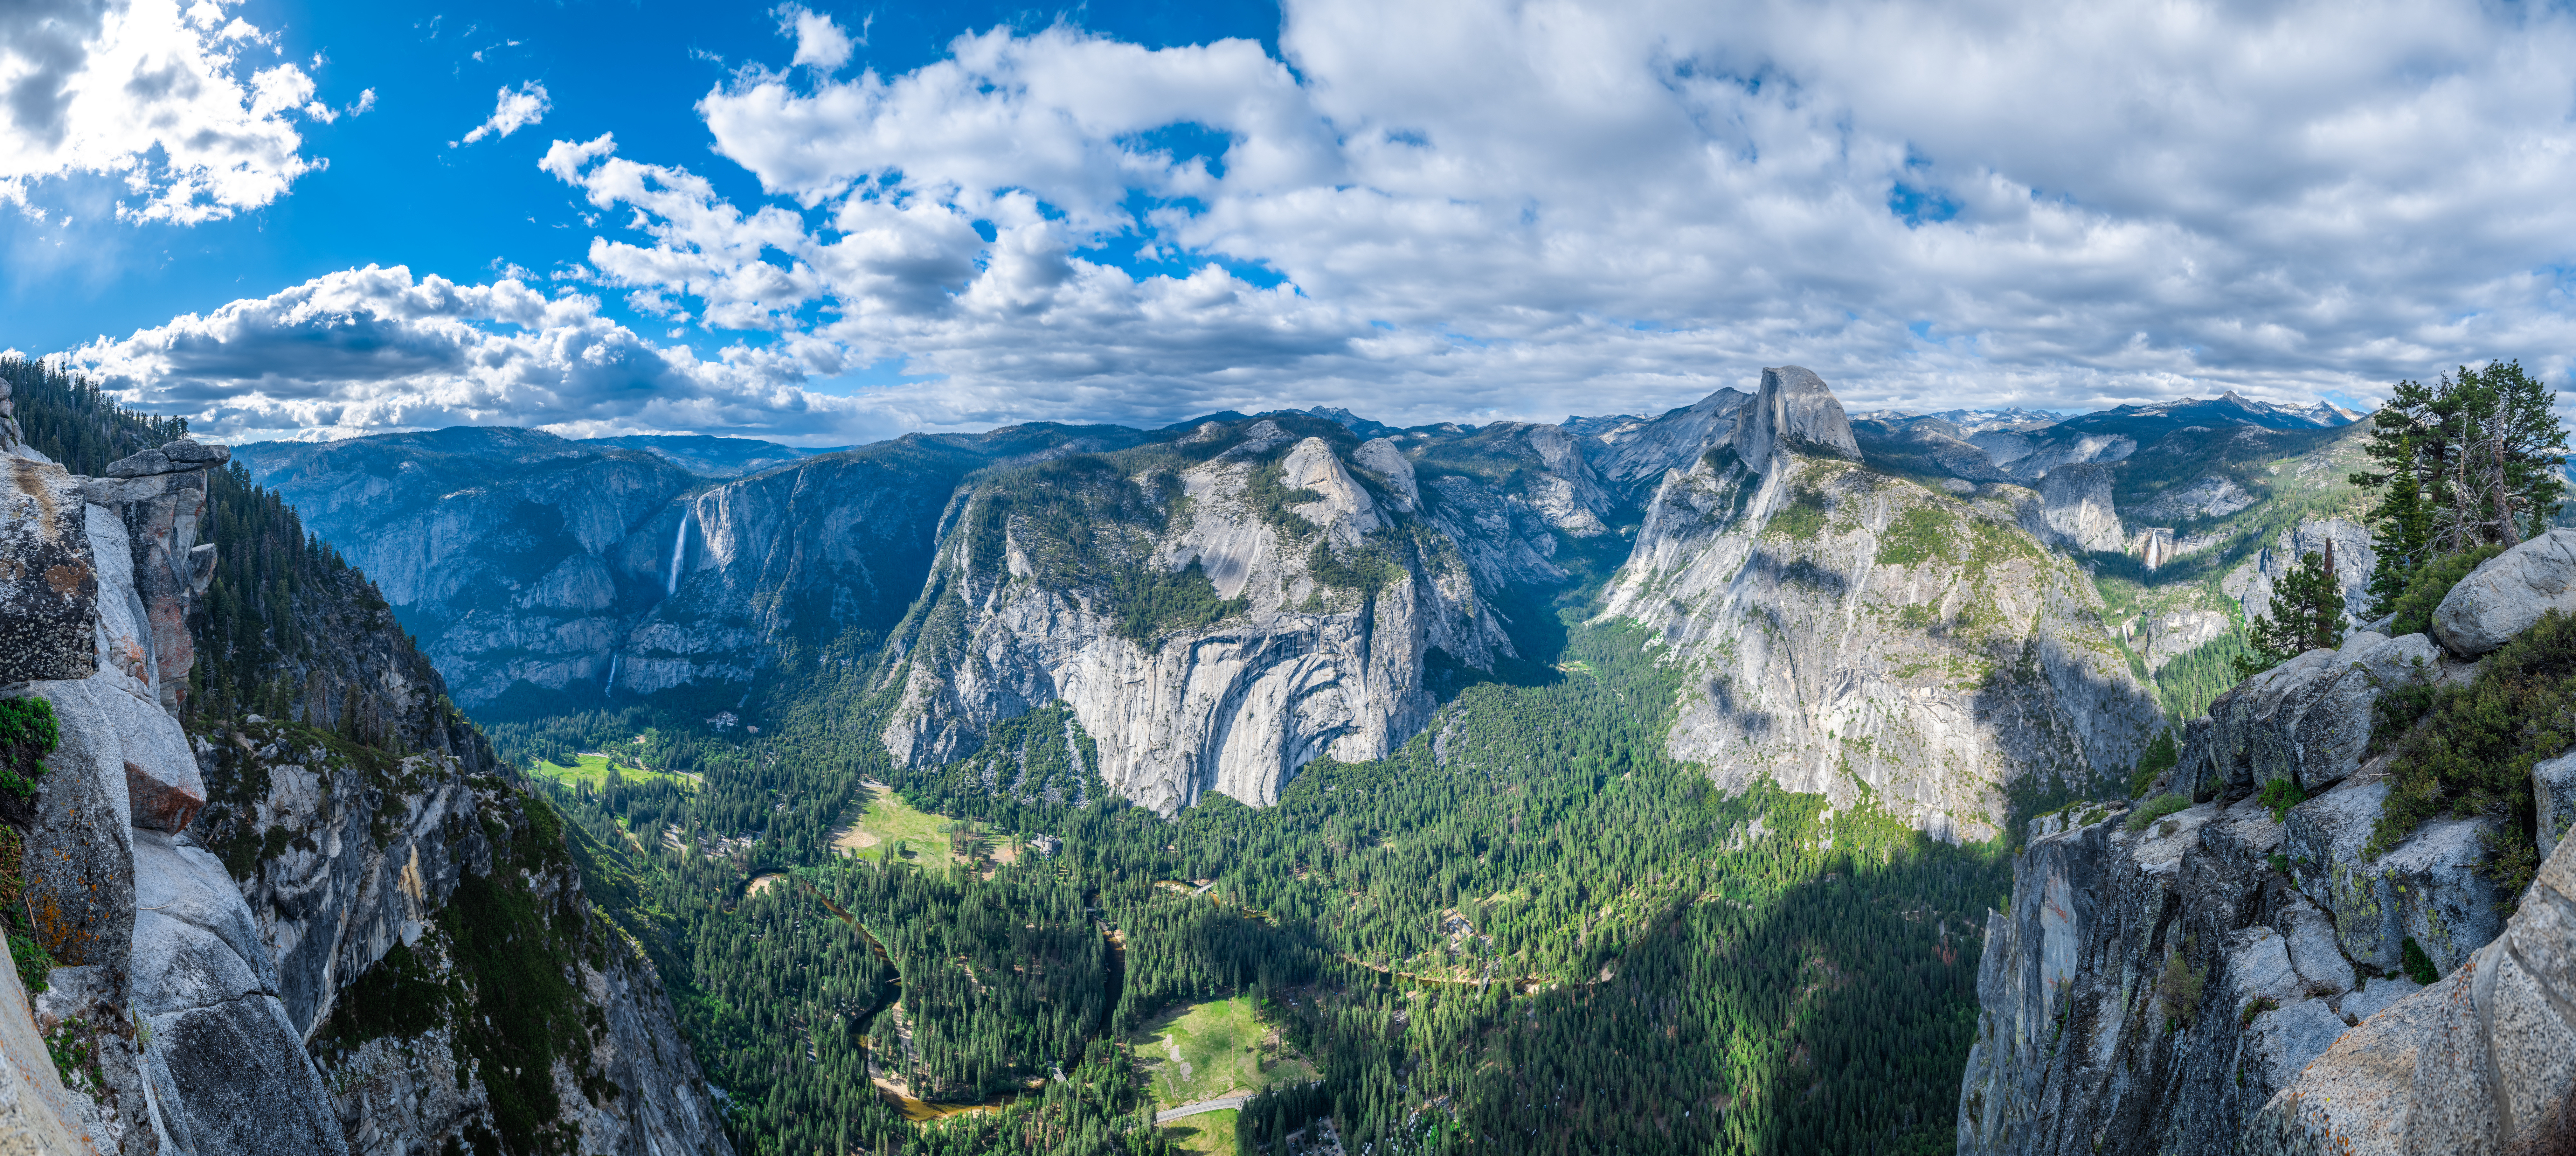 Фото Йосемити горы калифорнии природа сша - бесплатные картинки на Fonwall